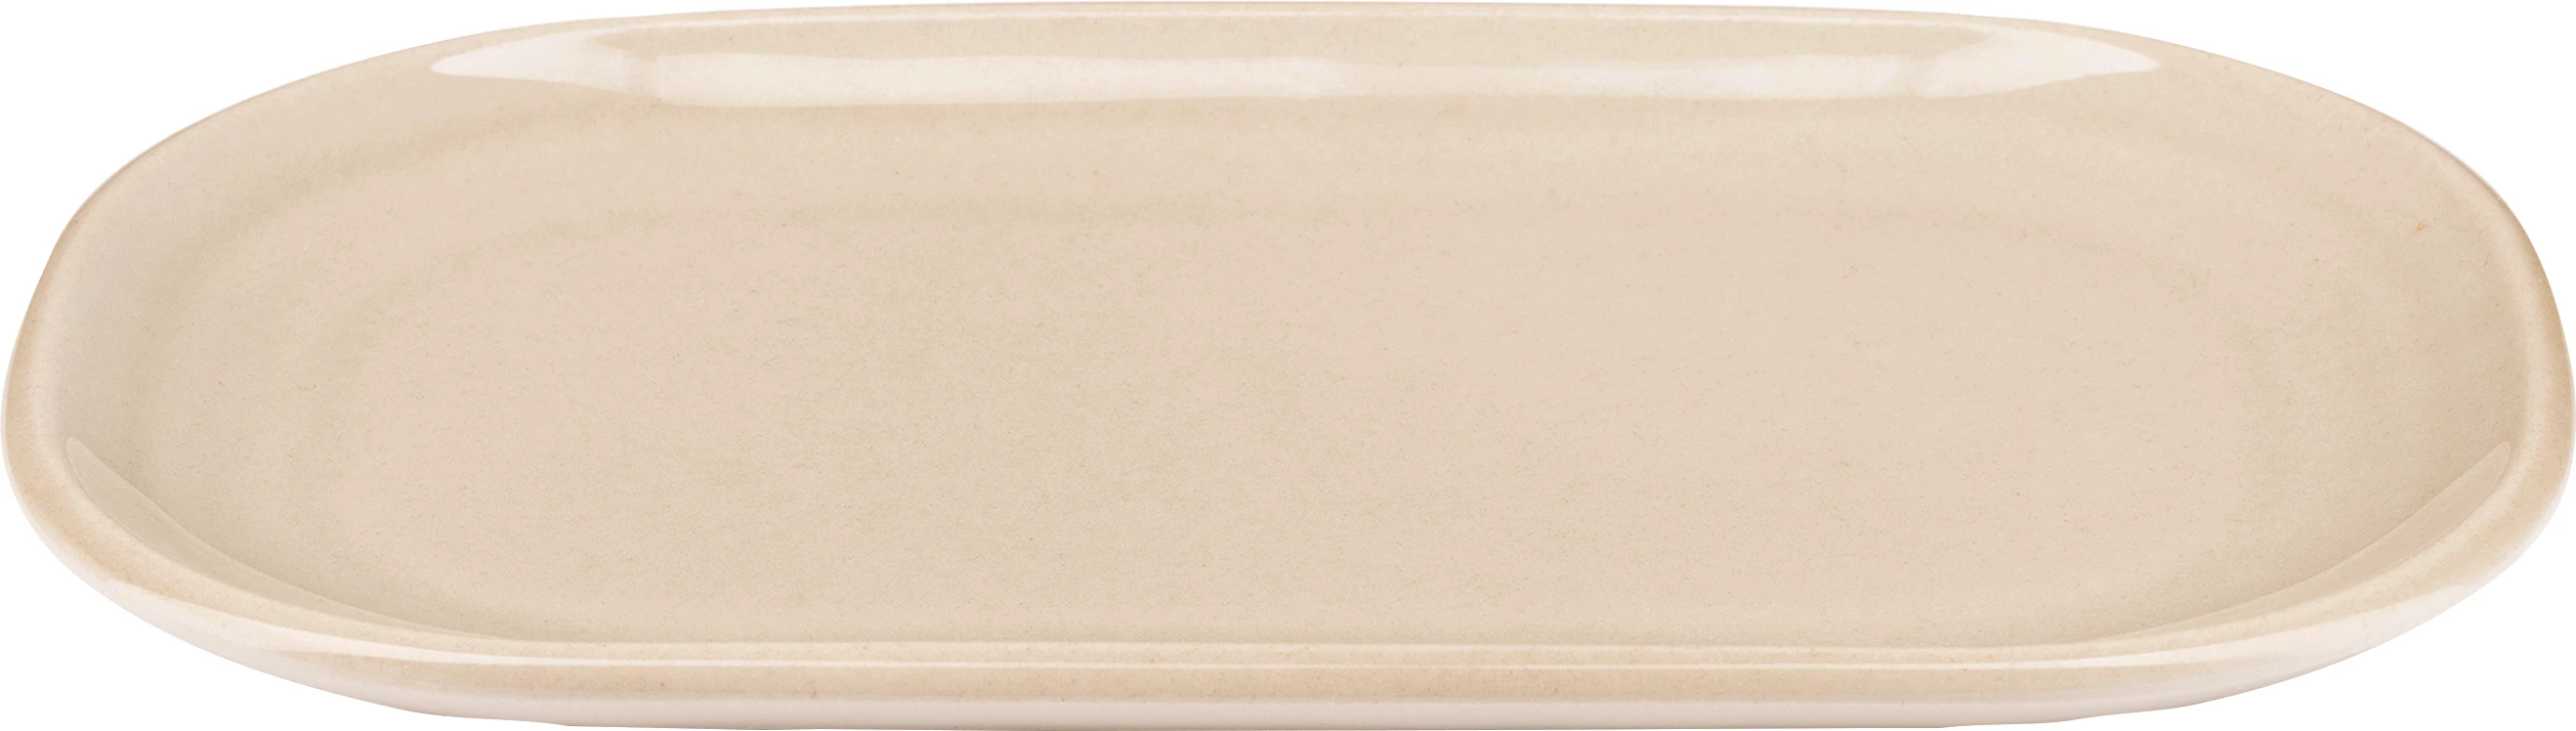 Figgjo Pax tallerken, oval, beige, 20 x 13 cm